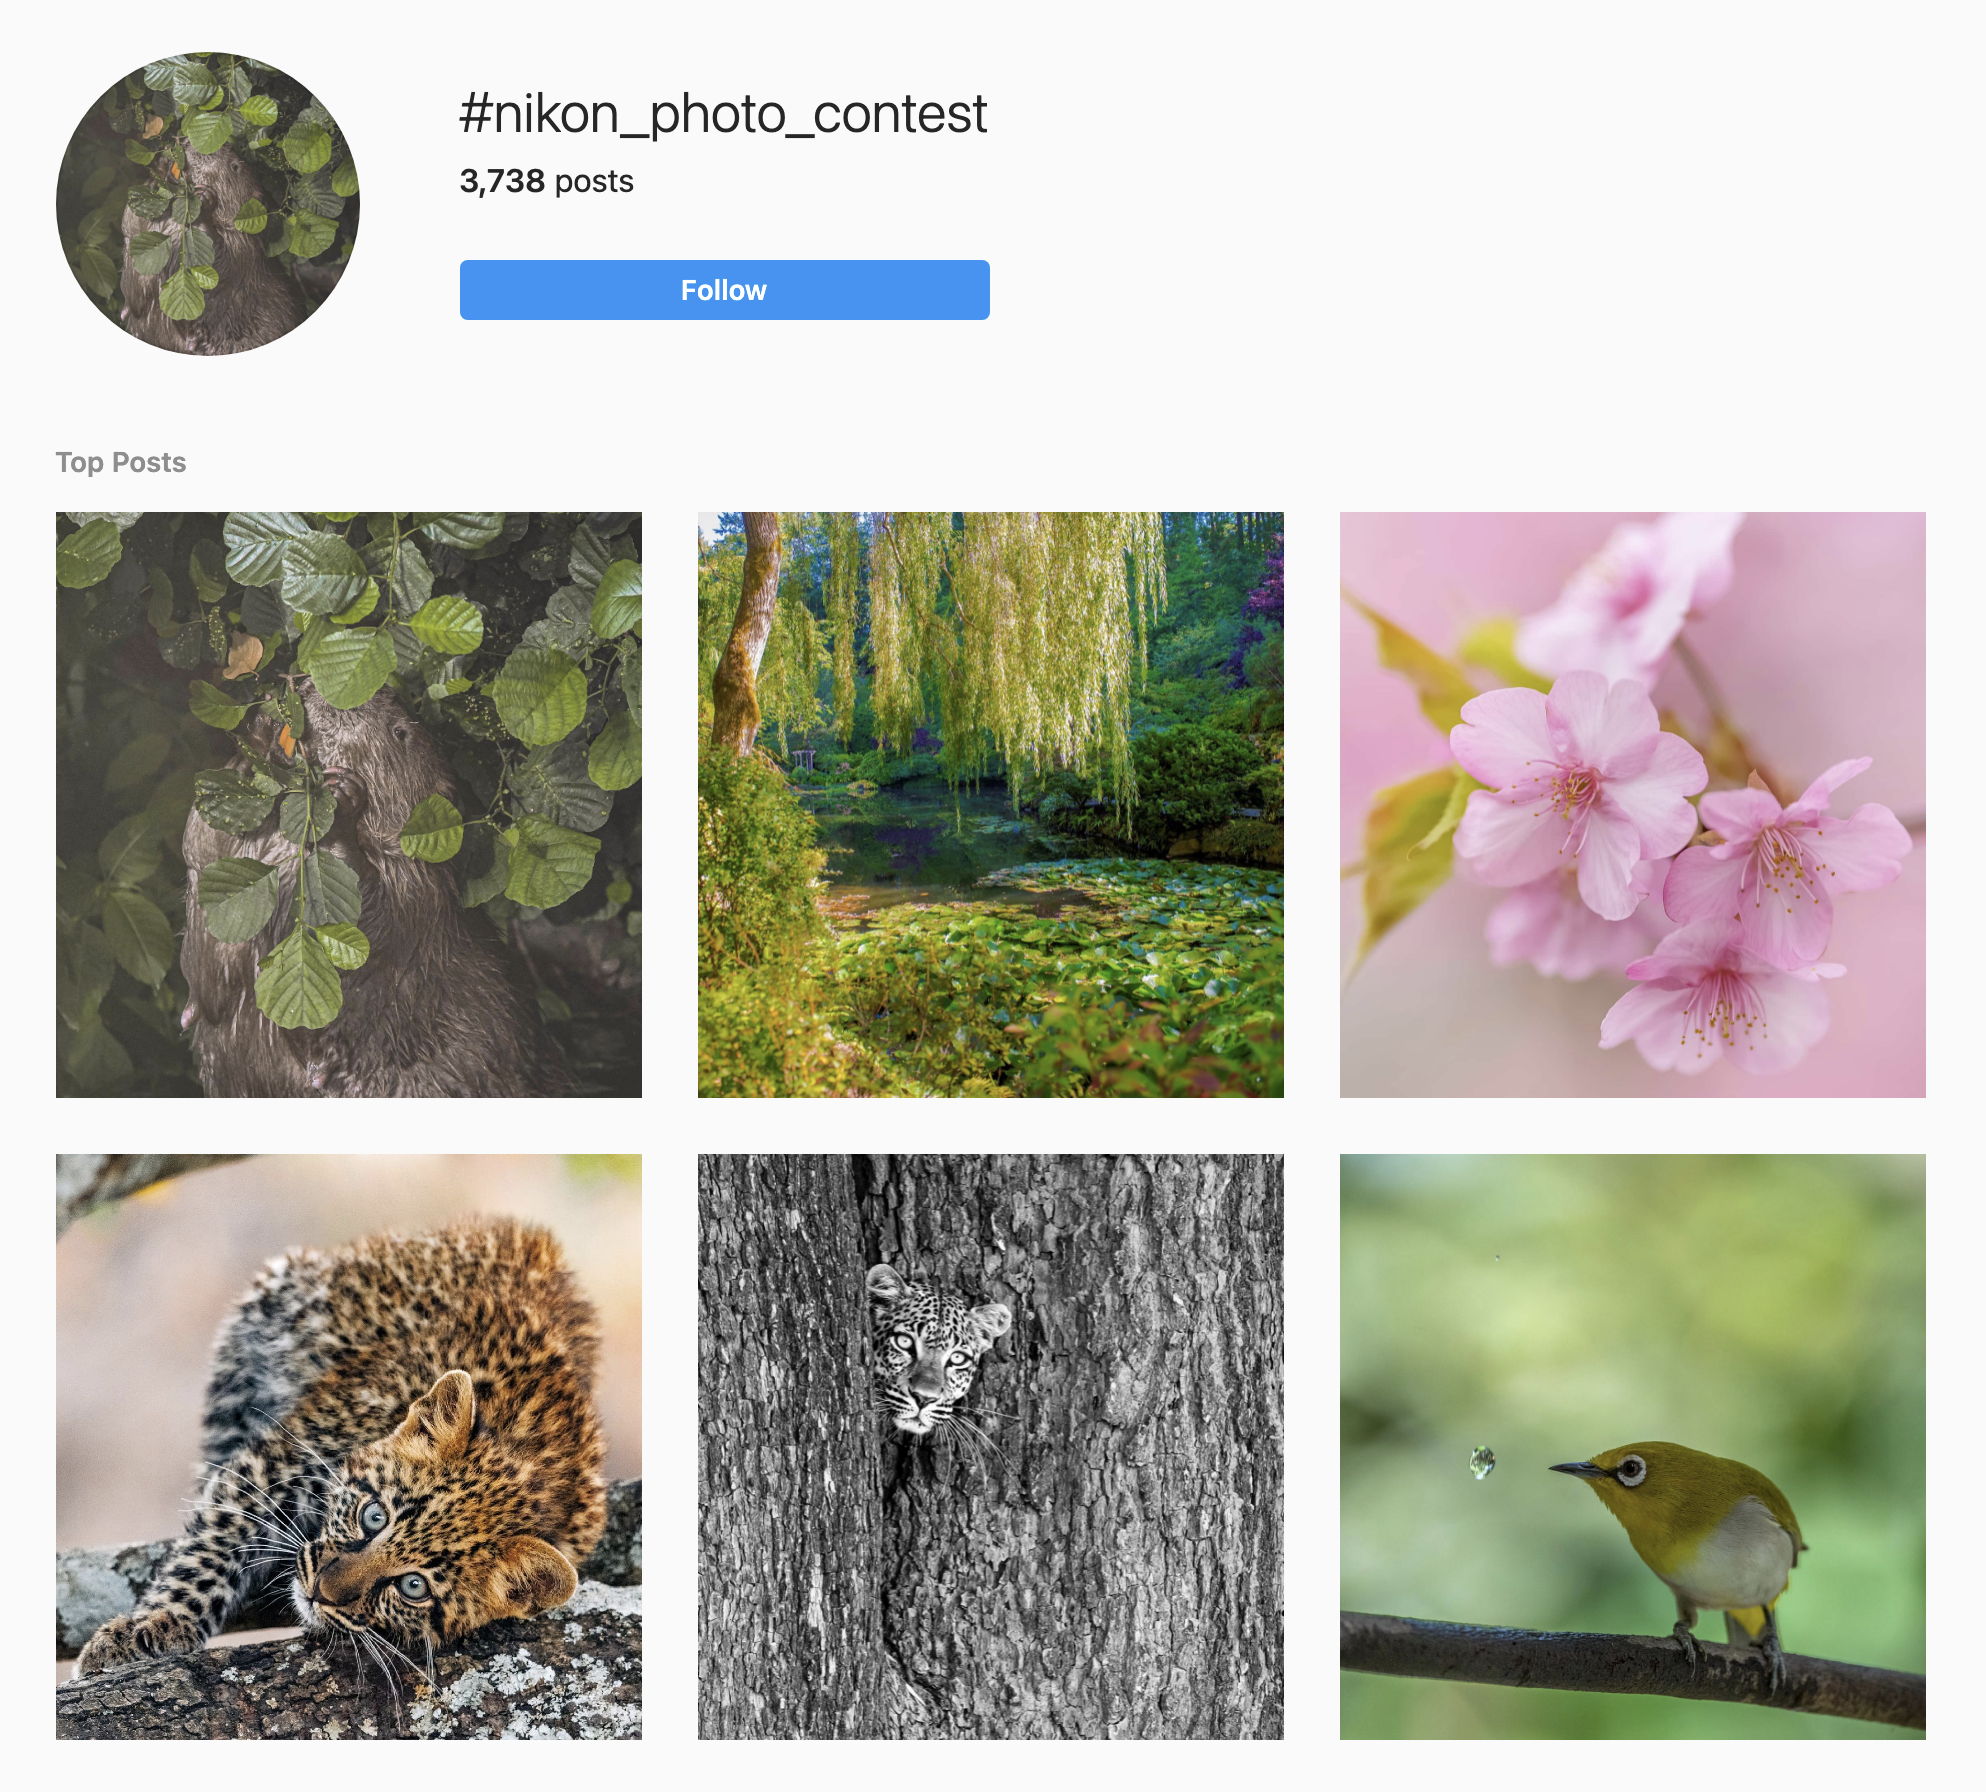 Nikon Photo Contest Hashtag Instagram